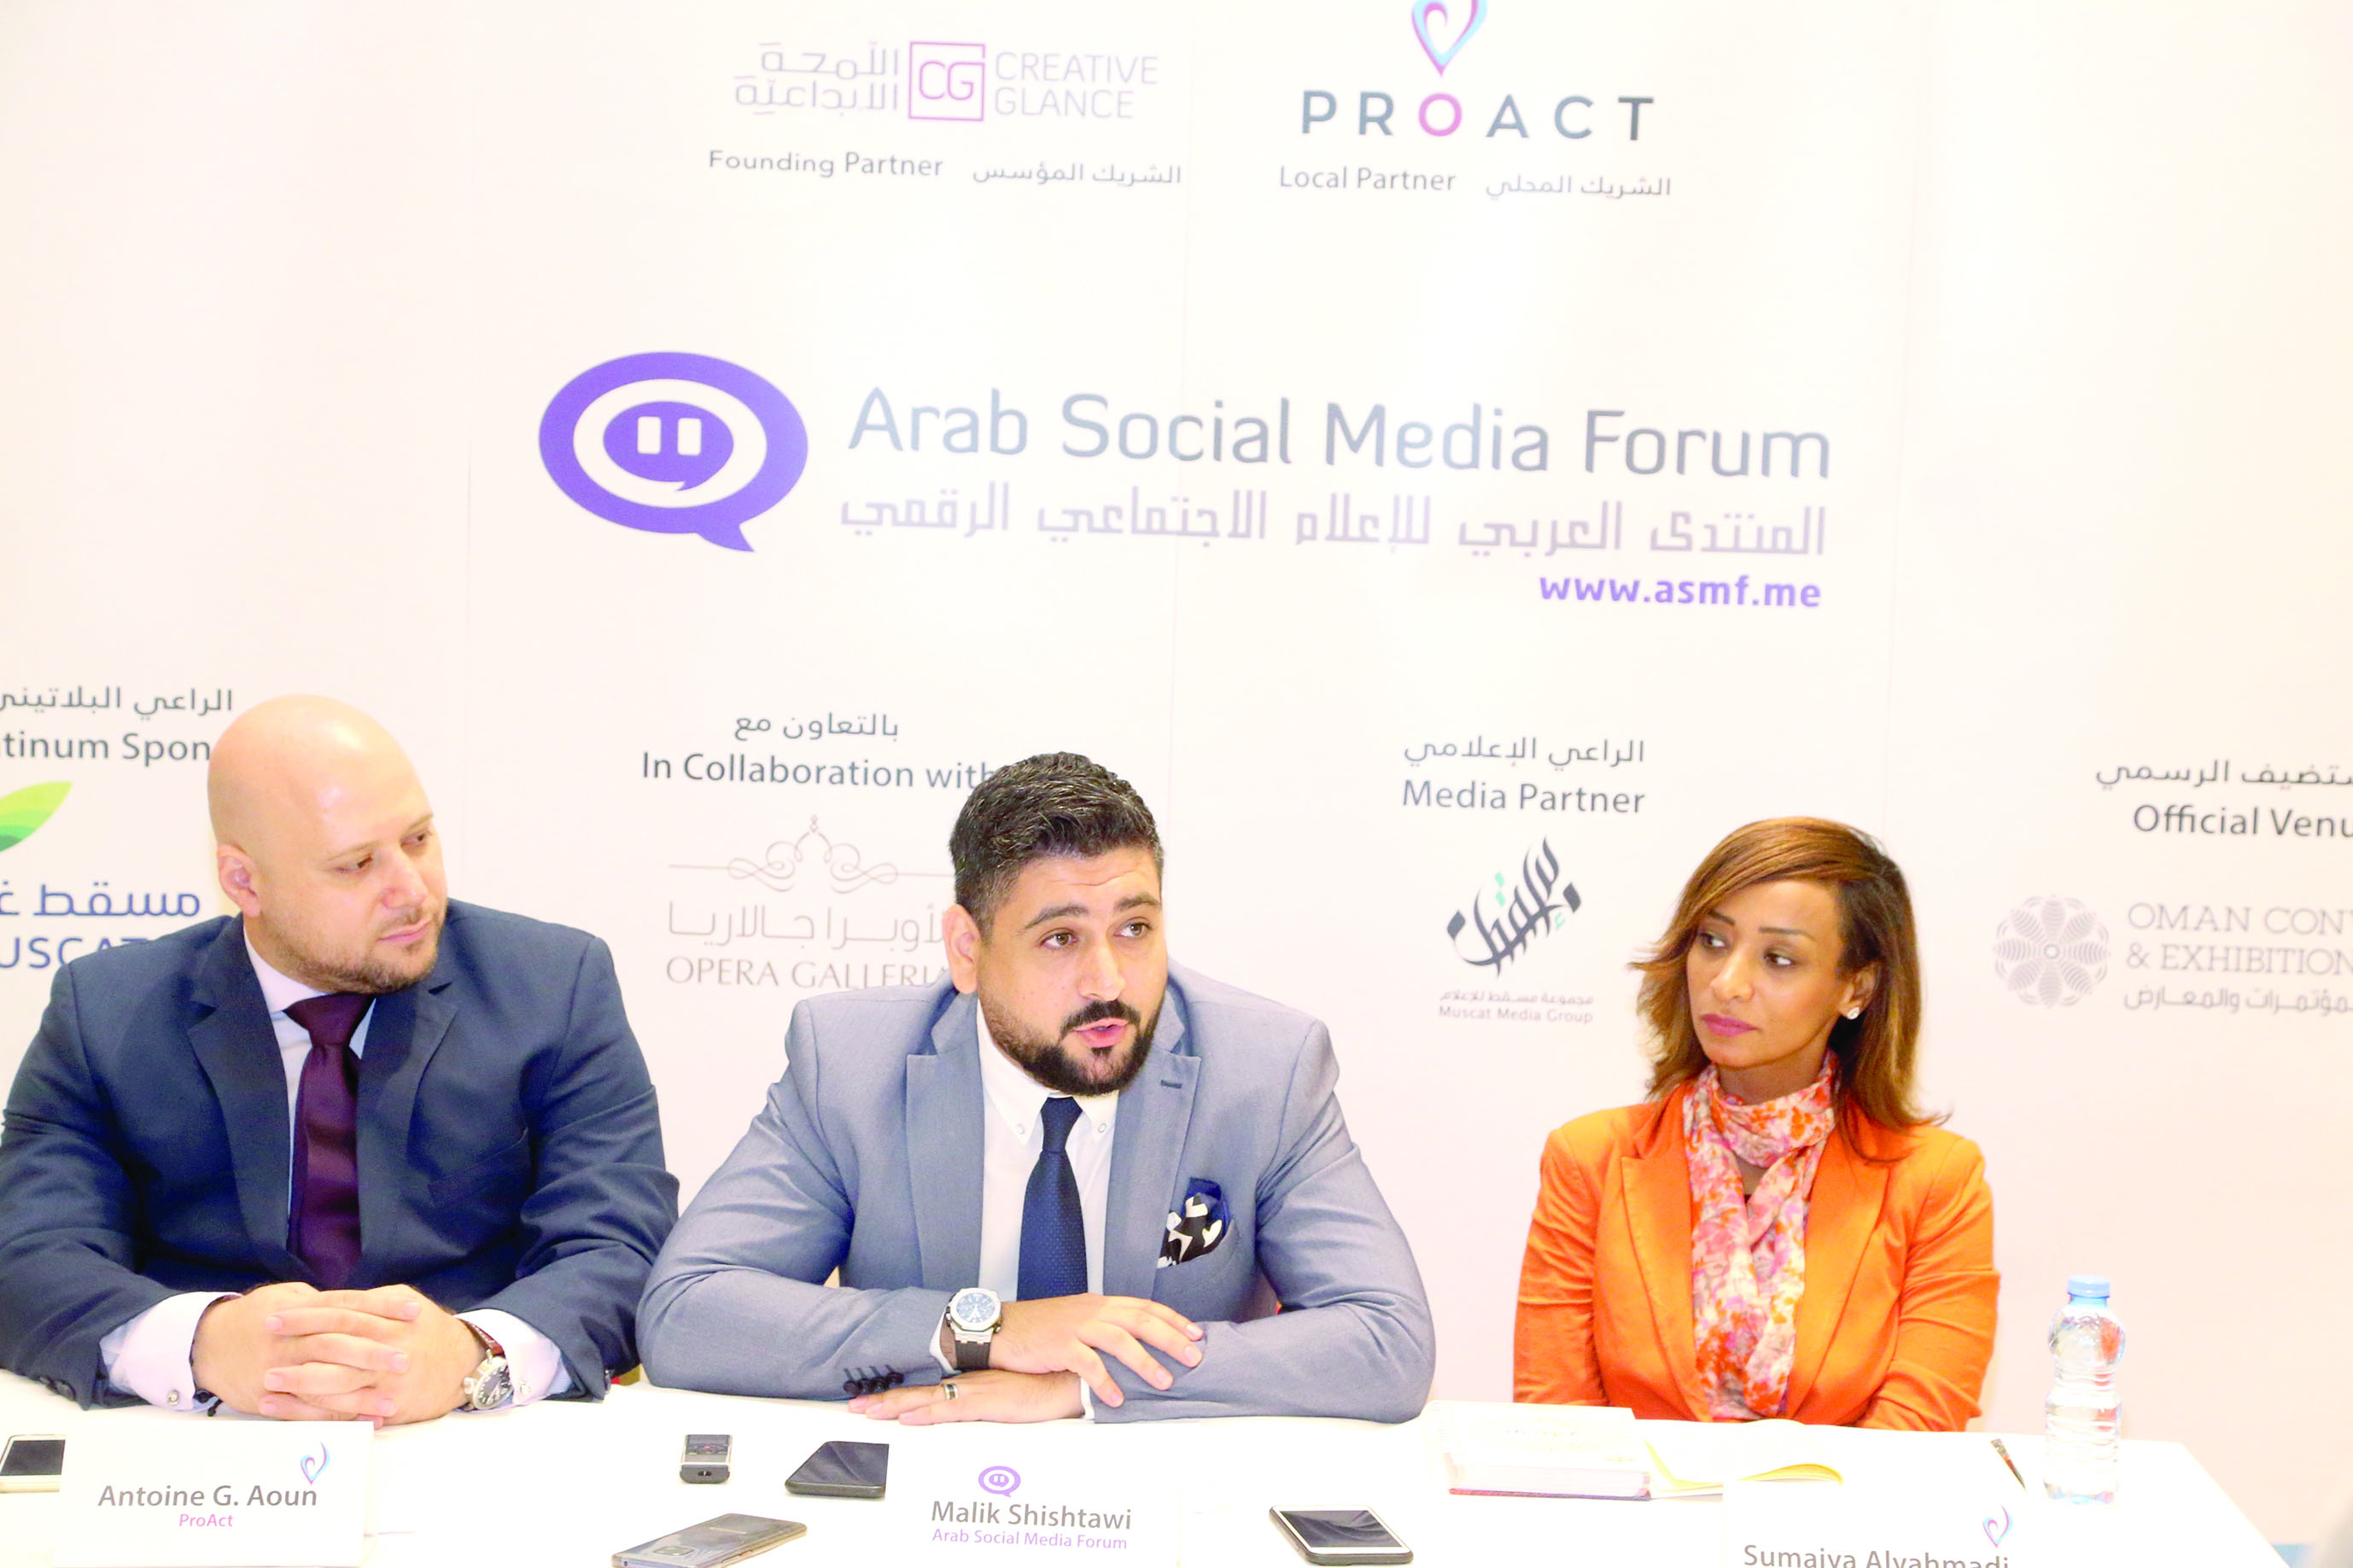 المنتدى العربي للإعلام الاجتماعي الرقمي في سبتمبر